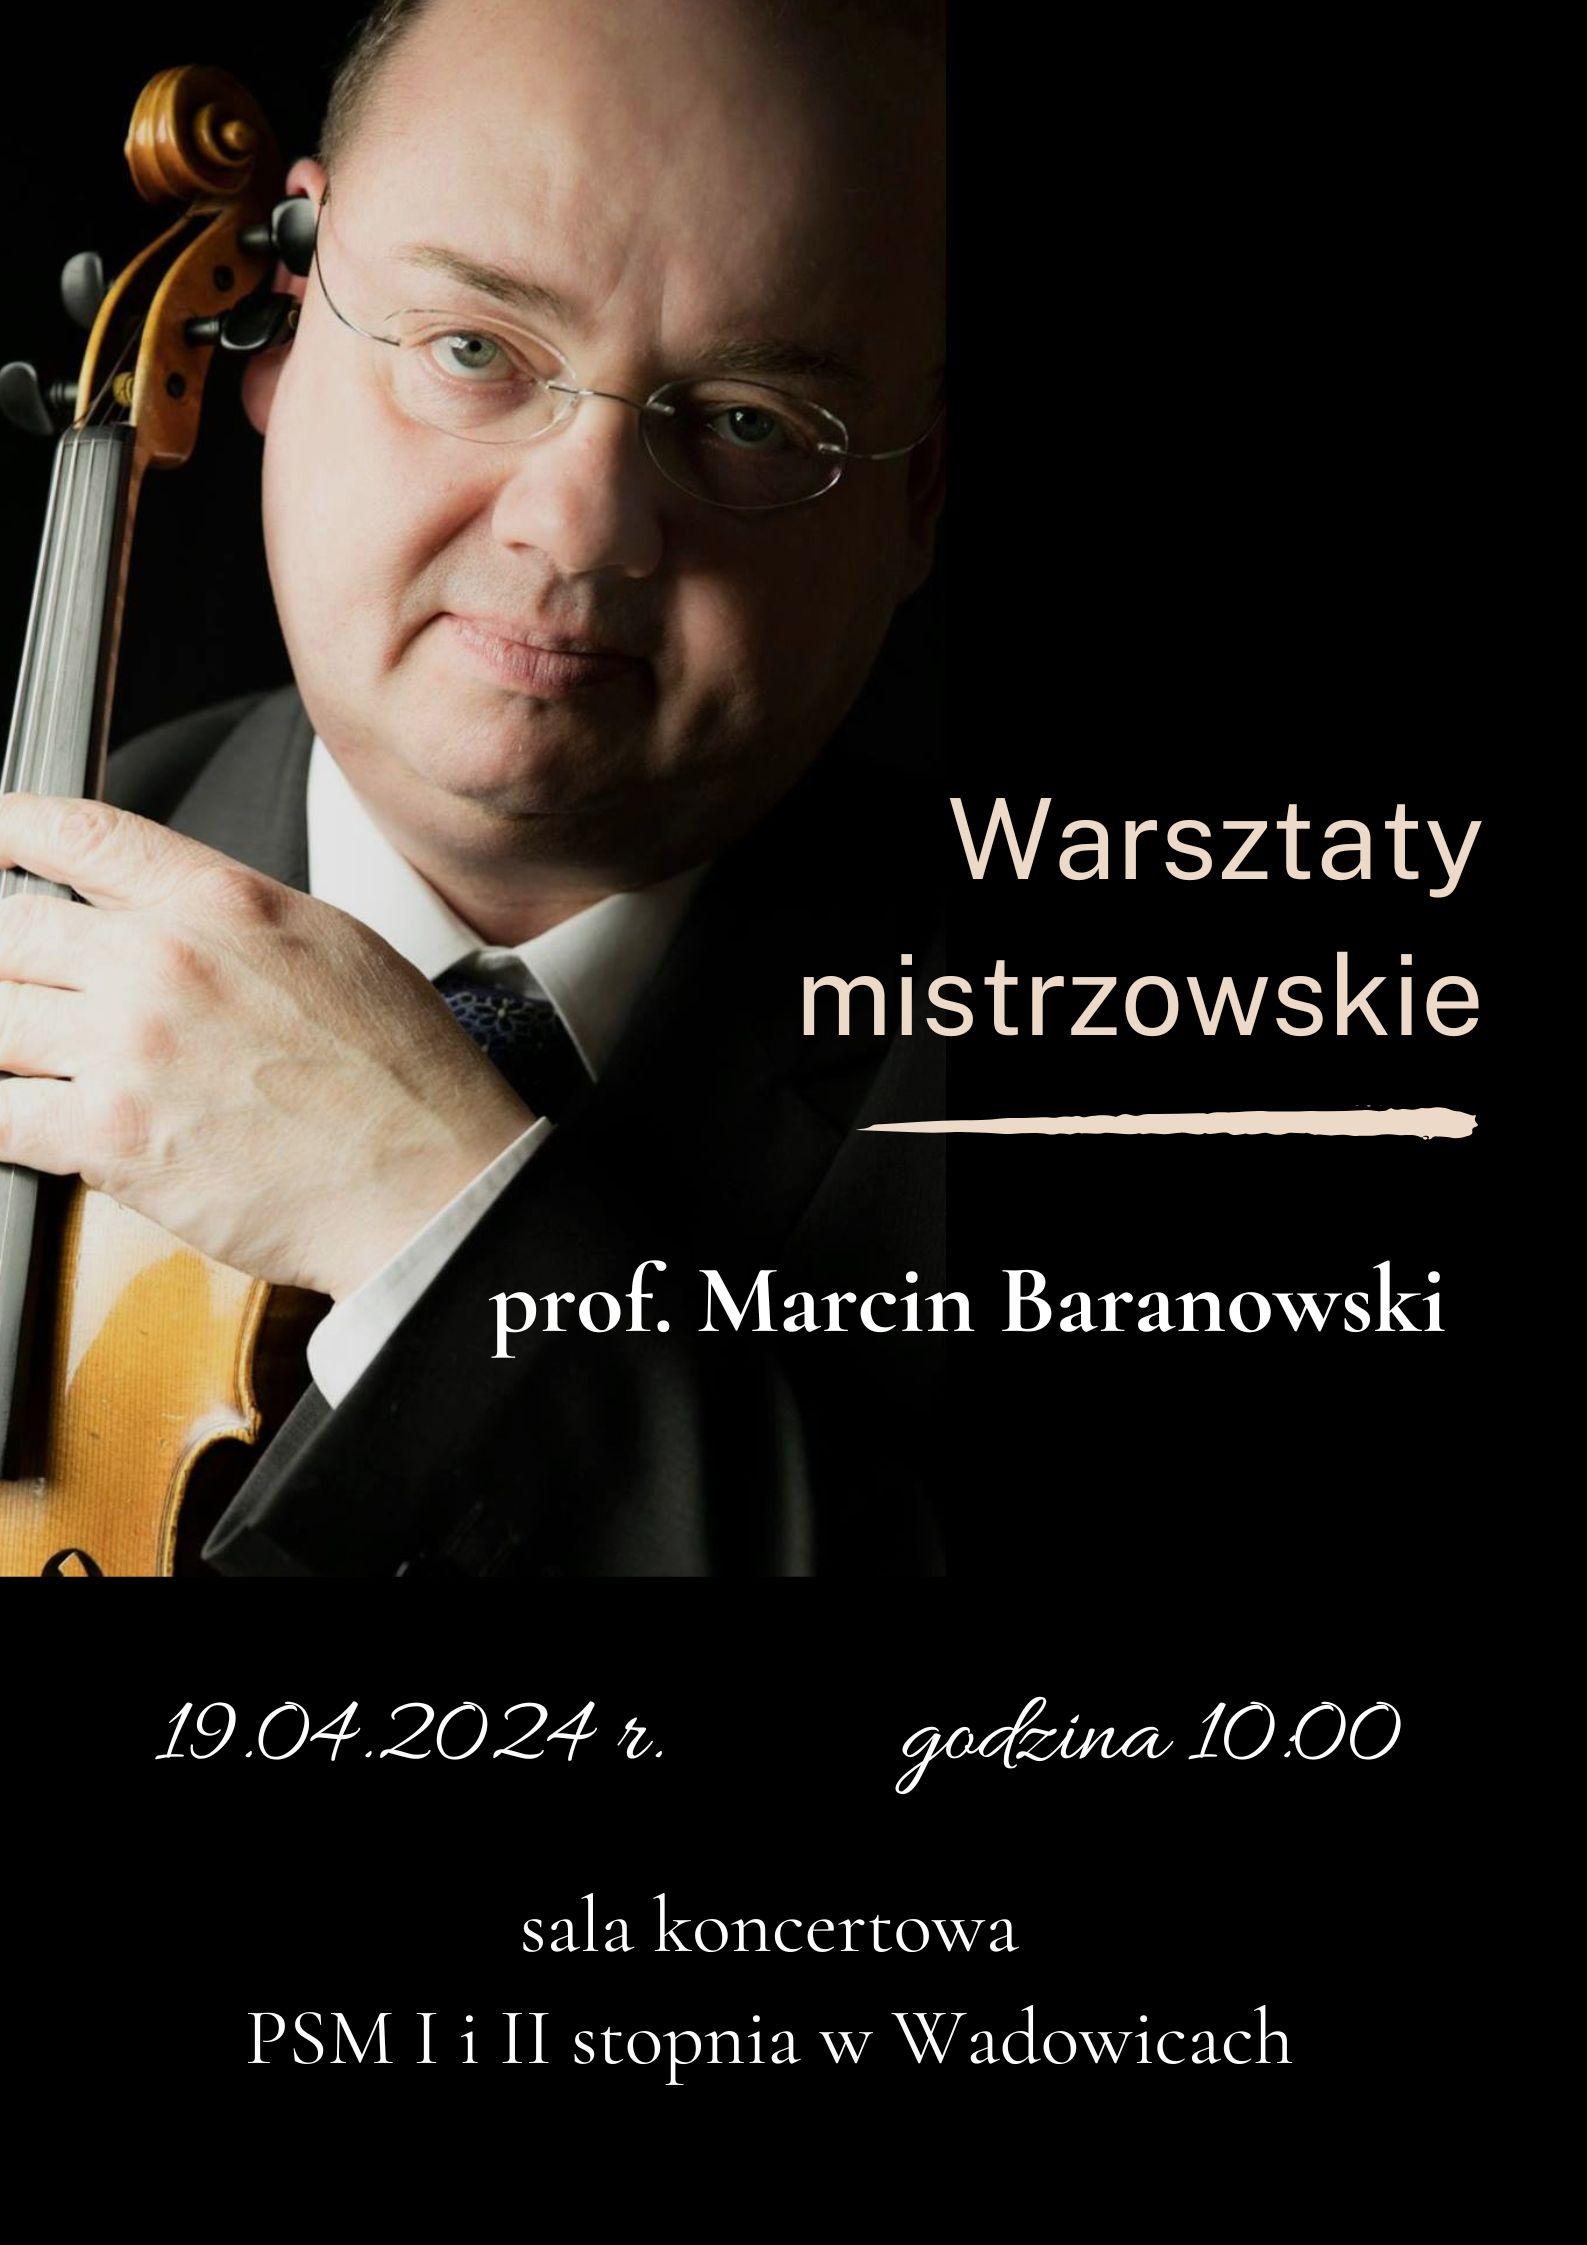 Warsztaty Mistrzowskie z prof. Marcinem Baranowskim 19.04.2024